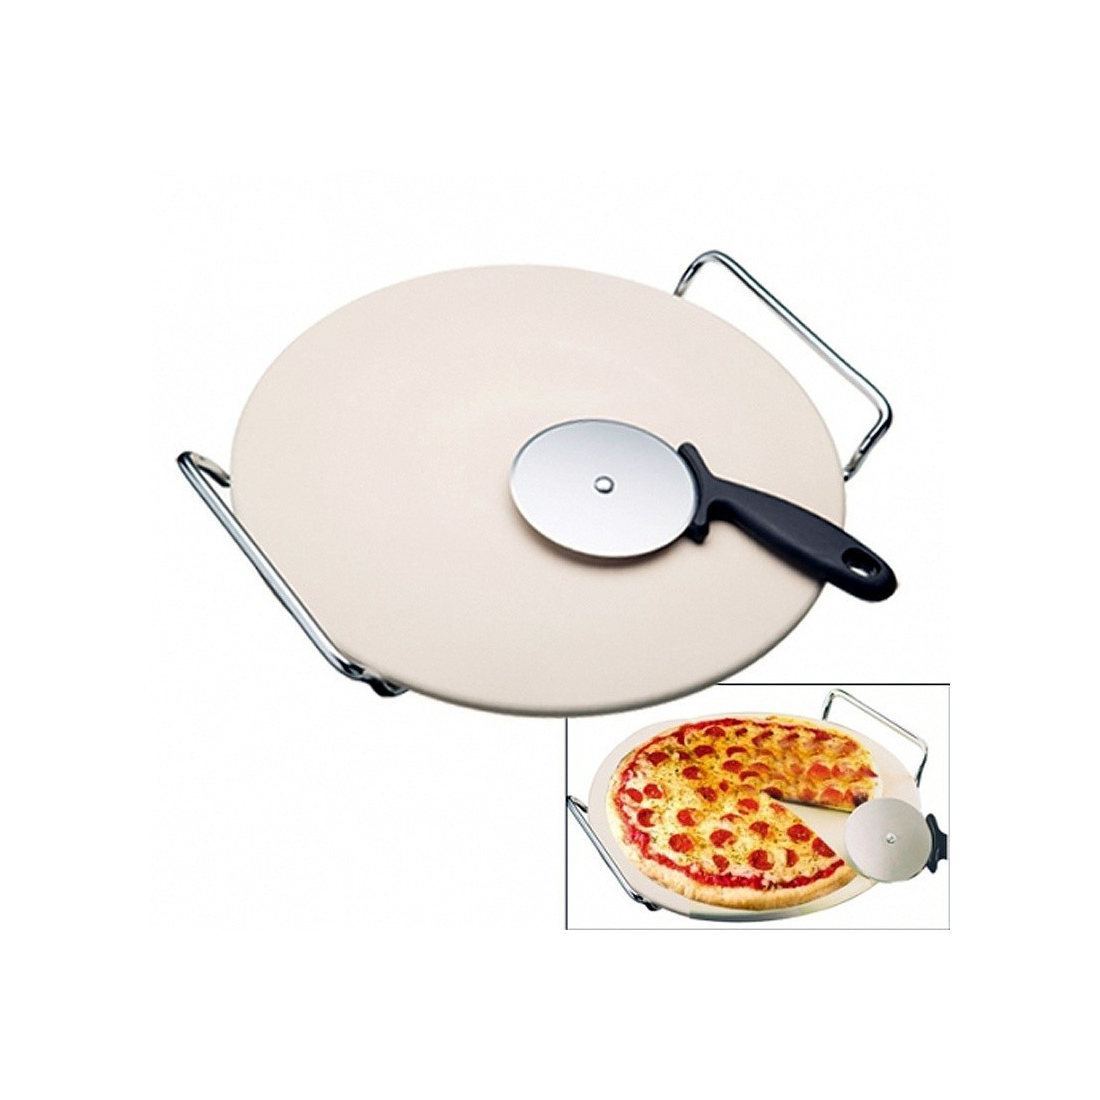 Pizza Stone and Roulette Pro D15-KDO8570 A la Plancha® Barbecue Oven and Accessories